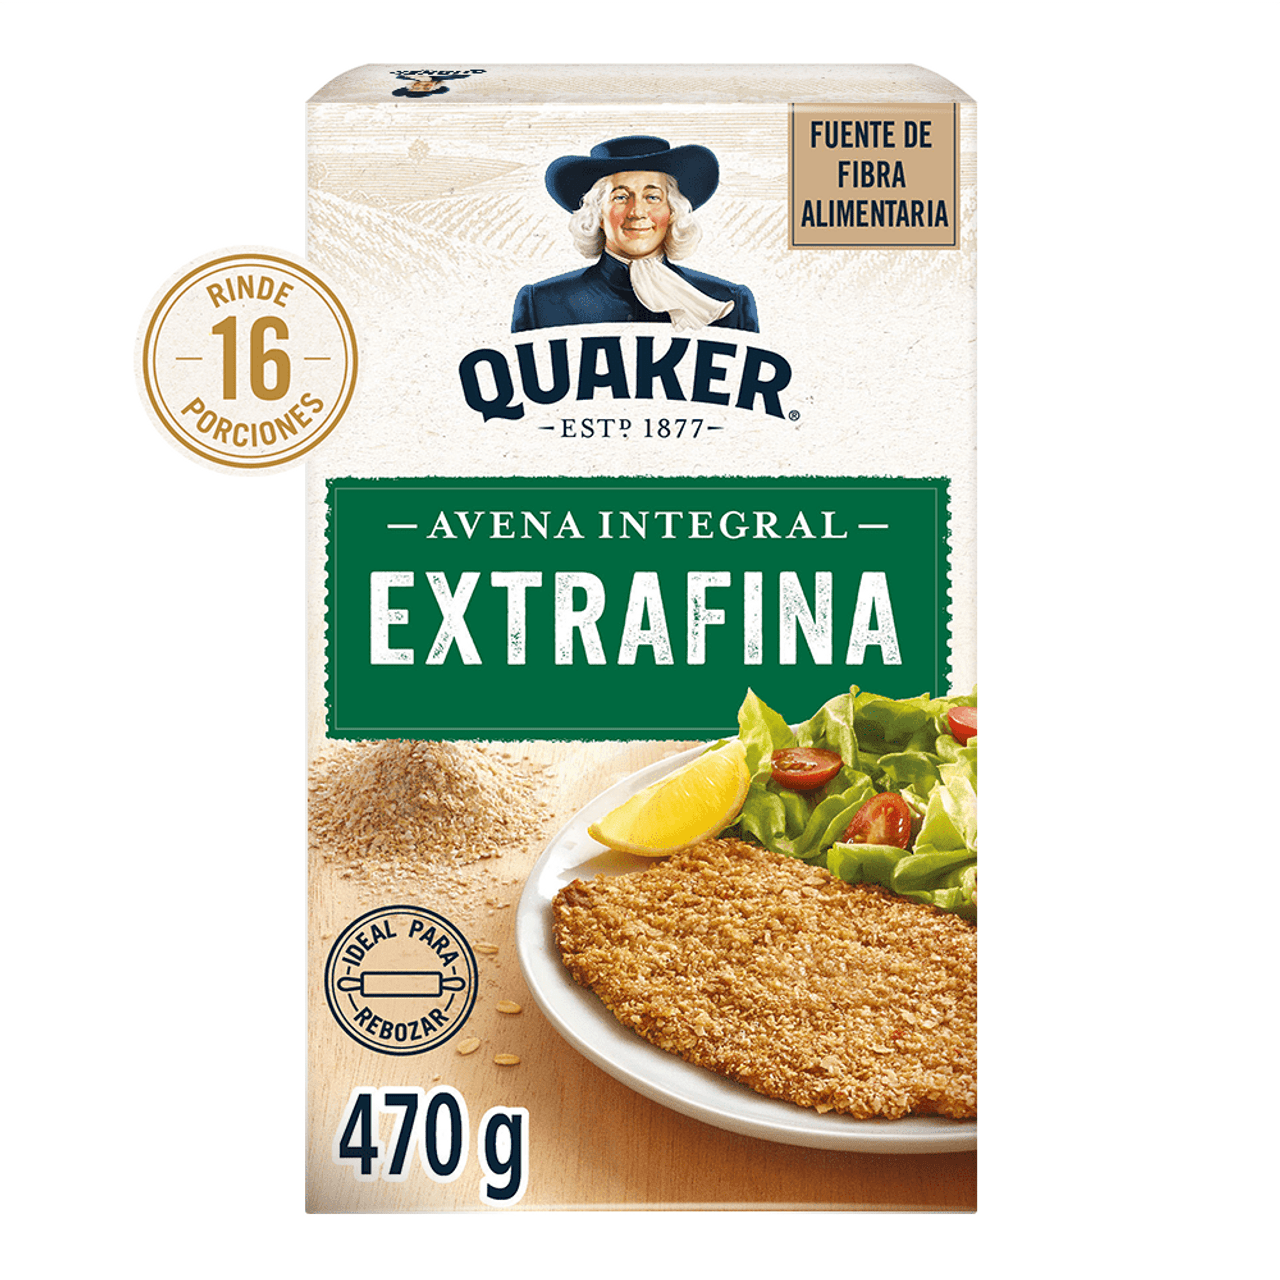 Avena Integral Quaker Super Foods Linaza - Jüsto Súper a Domicilio